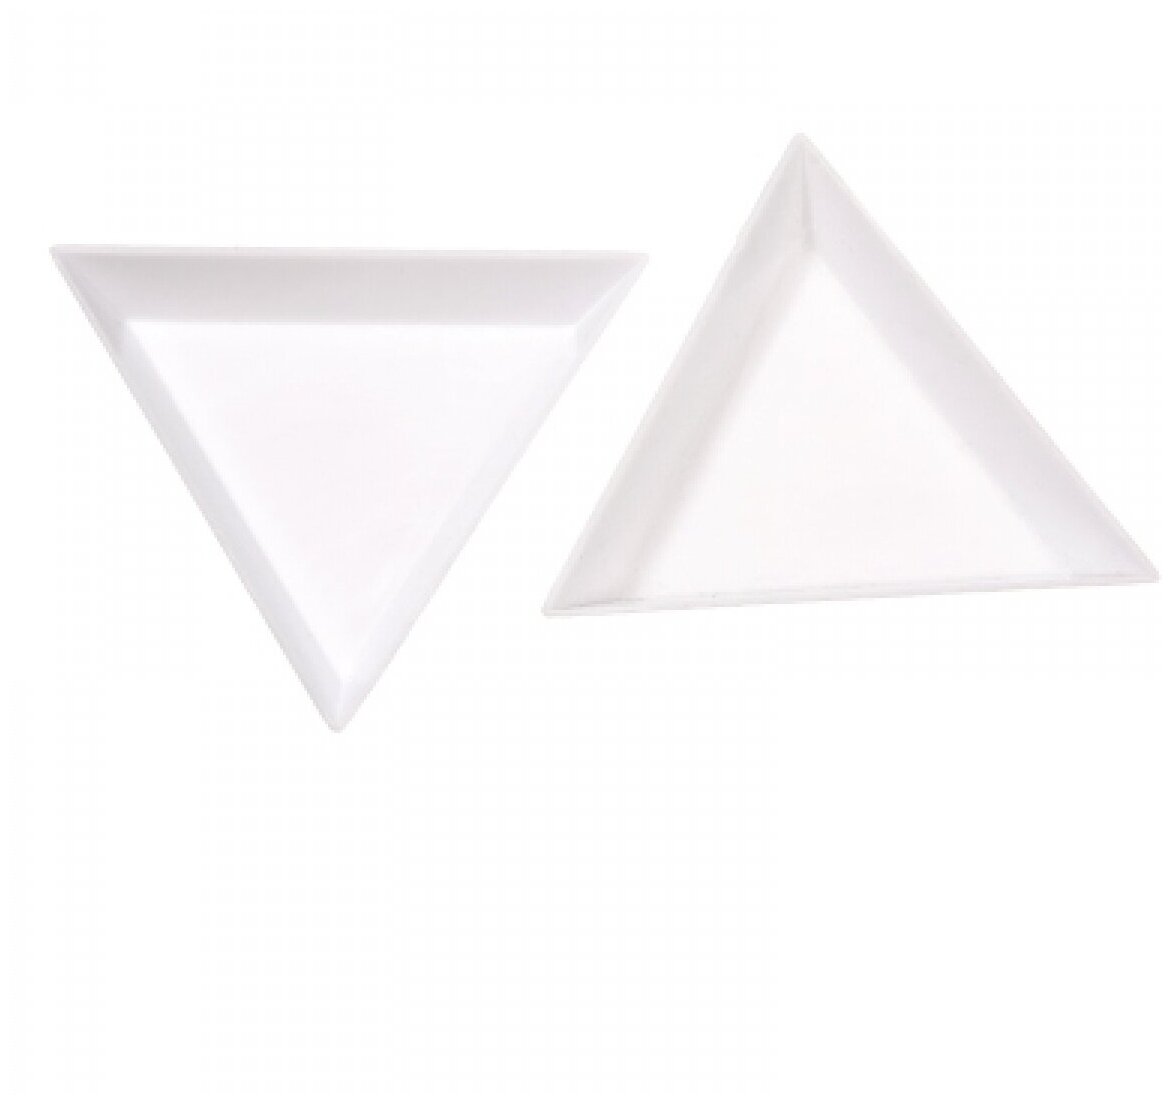 Irisk емкость для мелкого дизайна и смешивания материалов (треугольная)